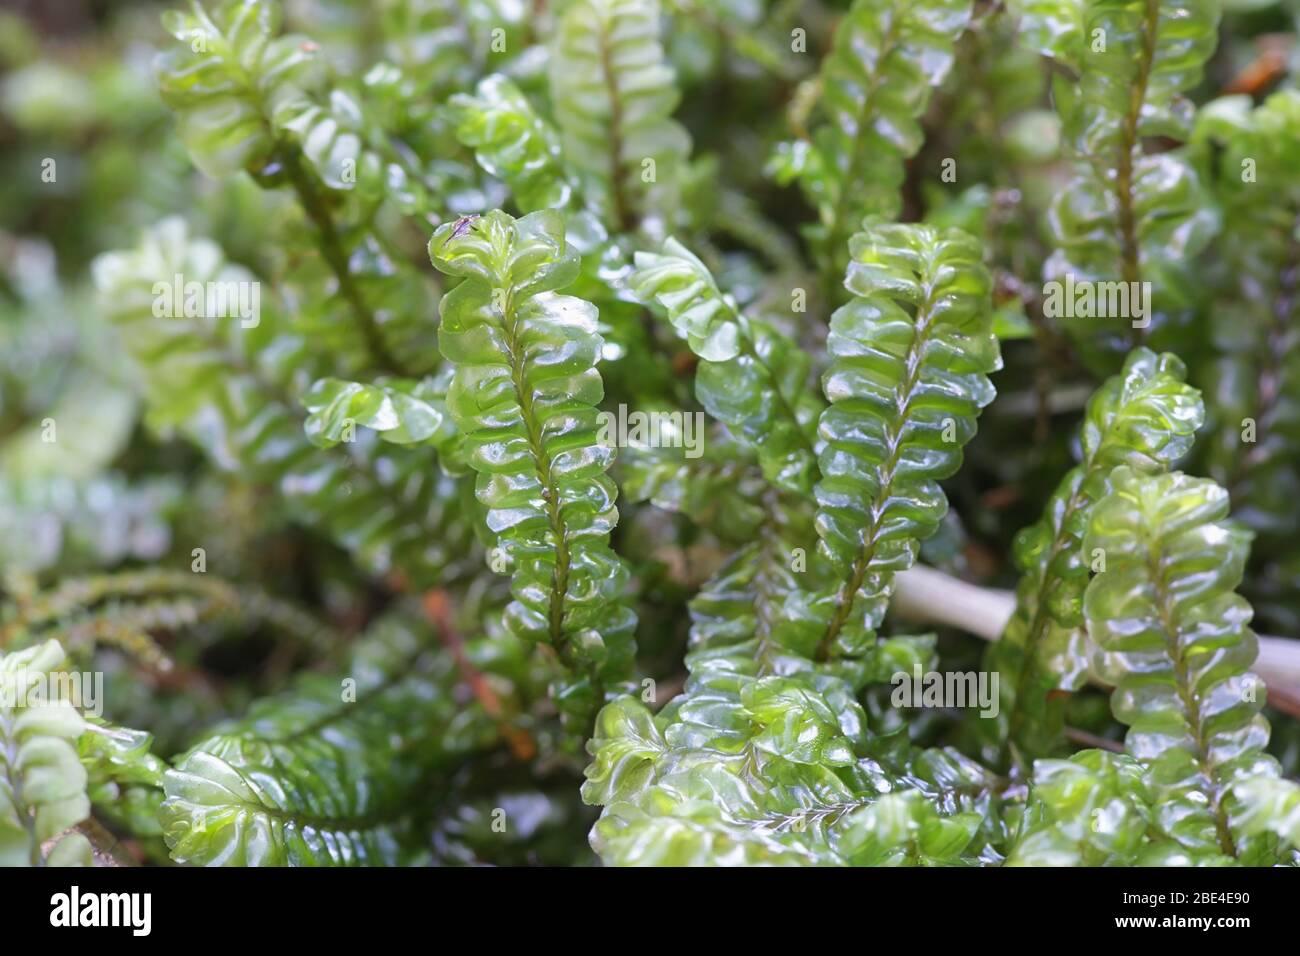 plagiochila-asplenioides-known-as-greater-featherwort-moss-2BE4E90.jpg